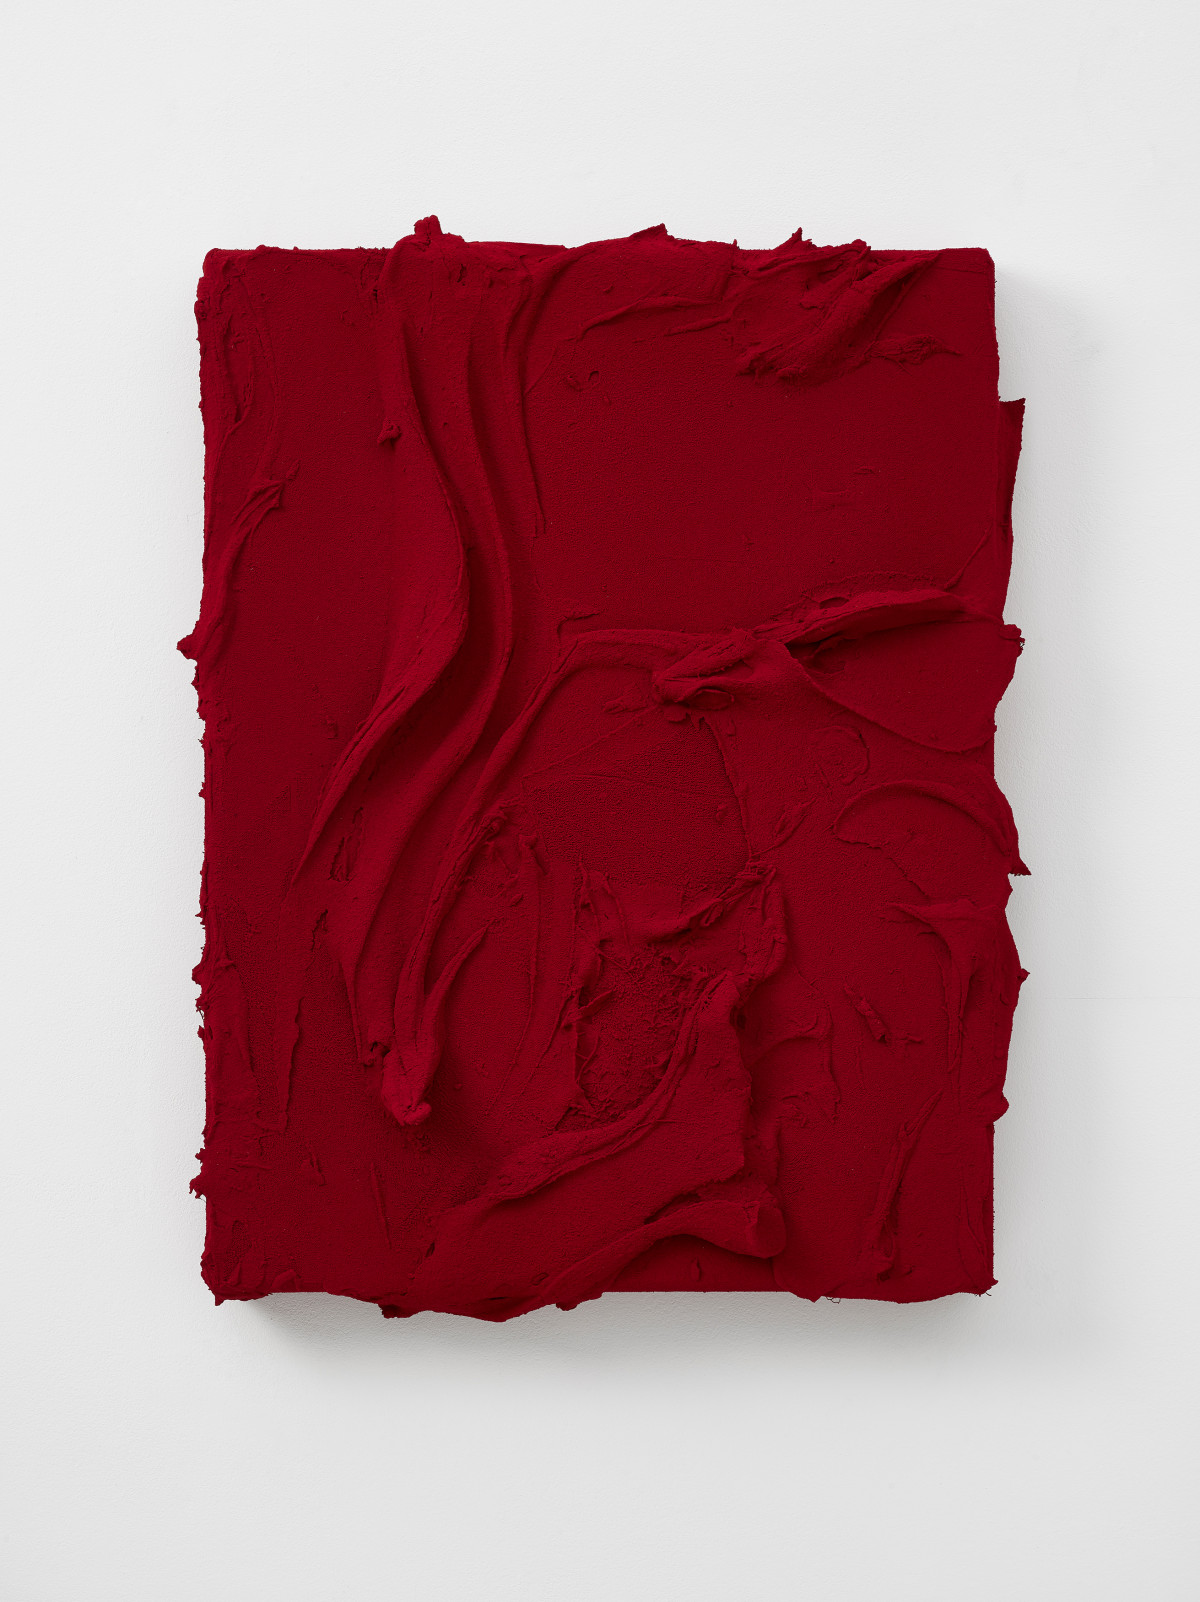 Jason Martin, ‘Thysia (Quinacridone red / Quinacridone scarlet)’, 2015, Mischtechnik auf Aluminium